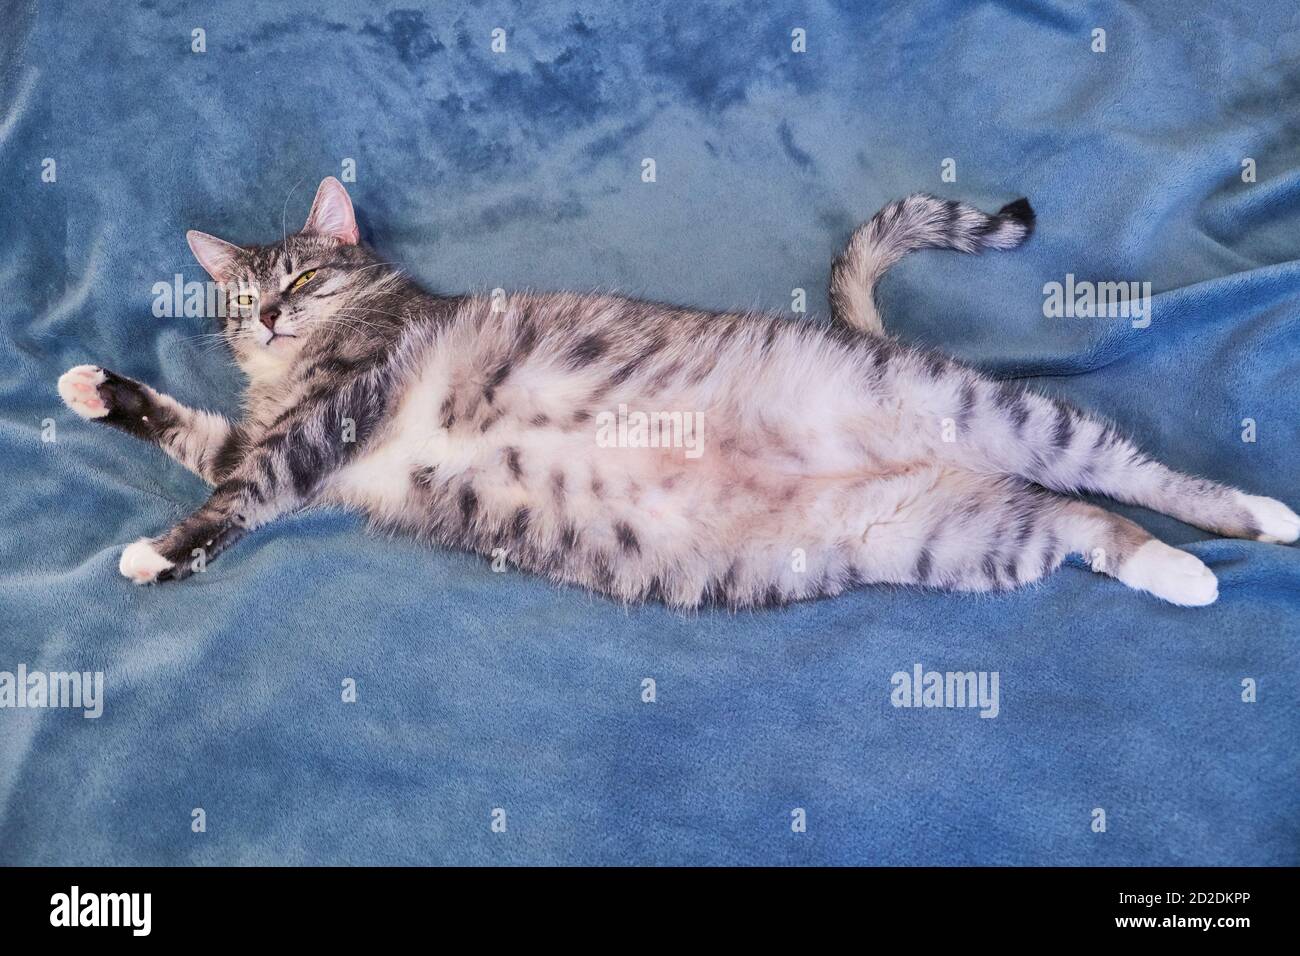 Katze liegt den Bauch hoch. Großer Bauch eines Haustieres. Katze auf der  großen blauen Decke sieht böse aus. Copyspace für Text Stockfotografie -  Alamy